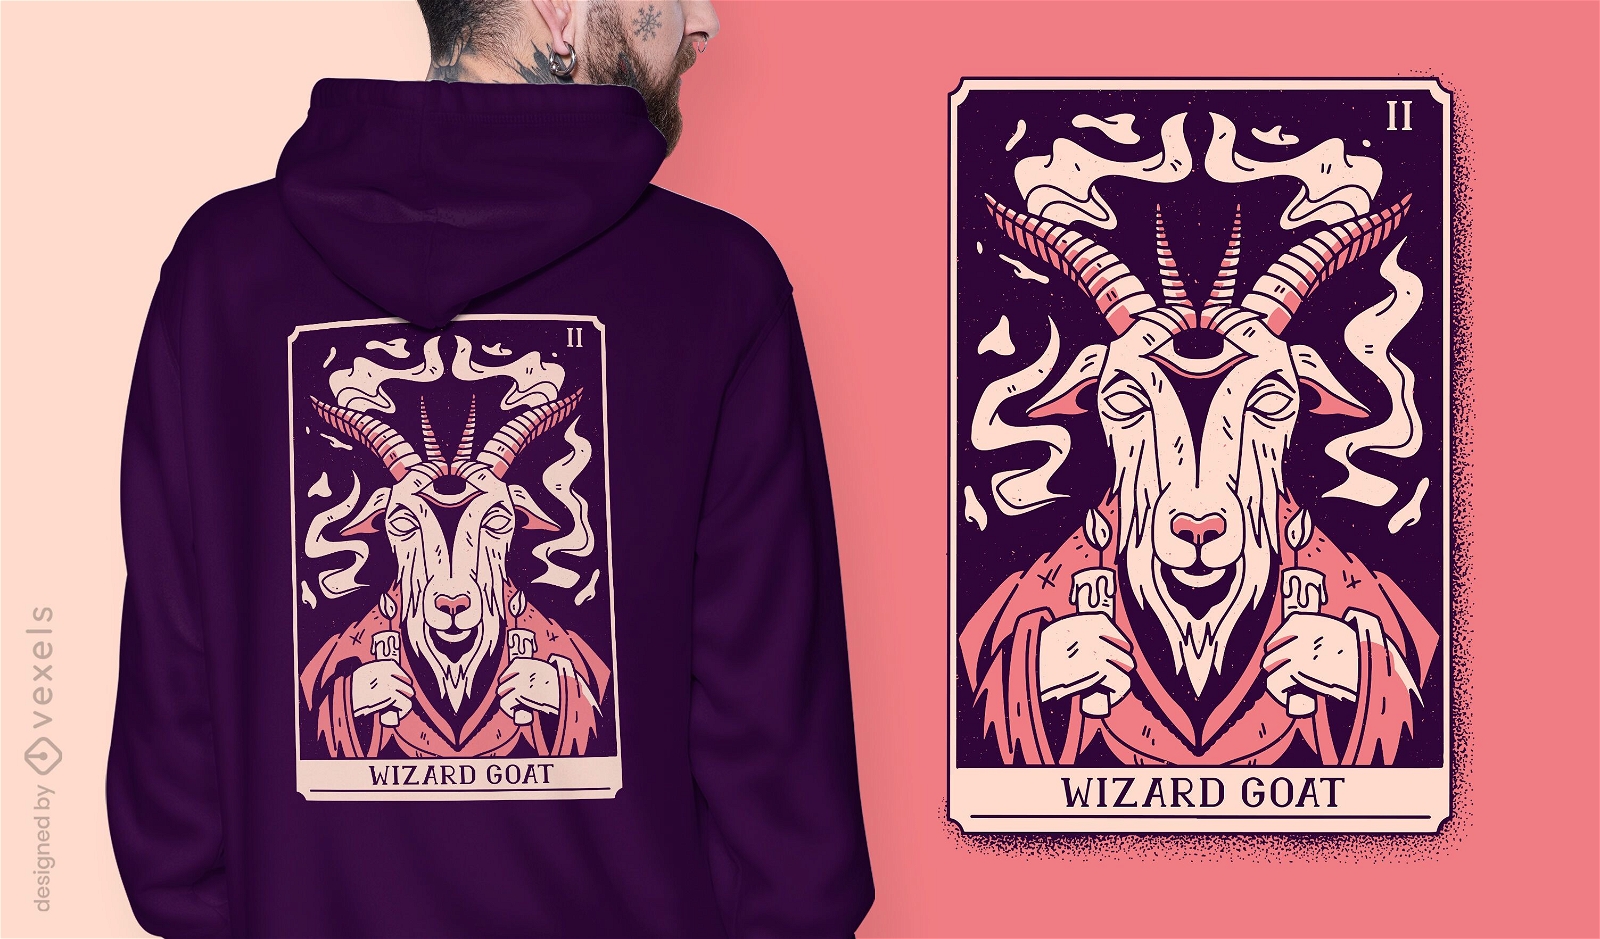 Wizard goat mystical tarot card t-shirt design